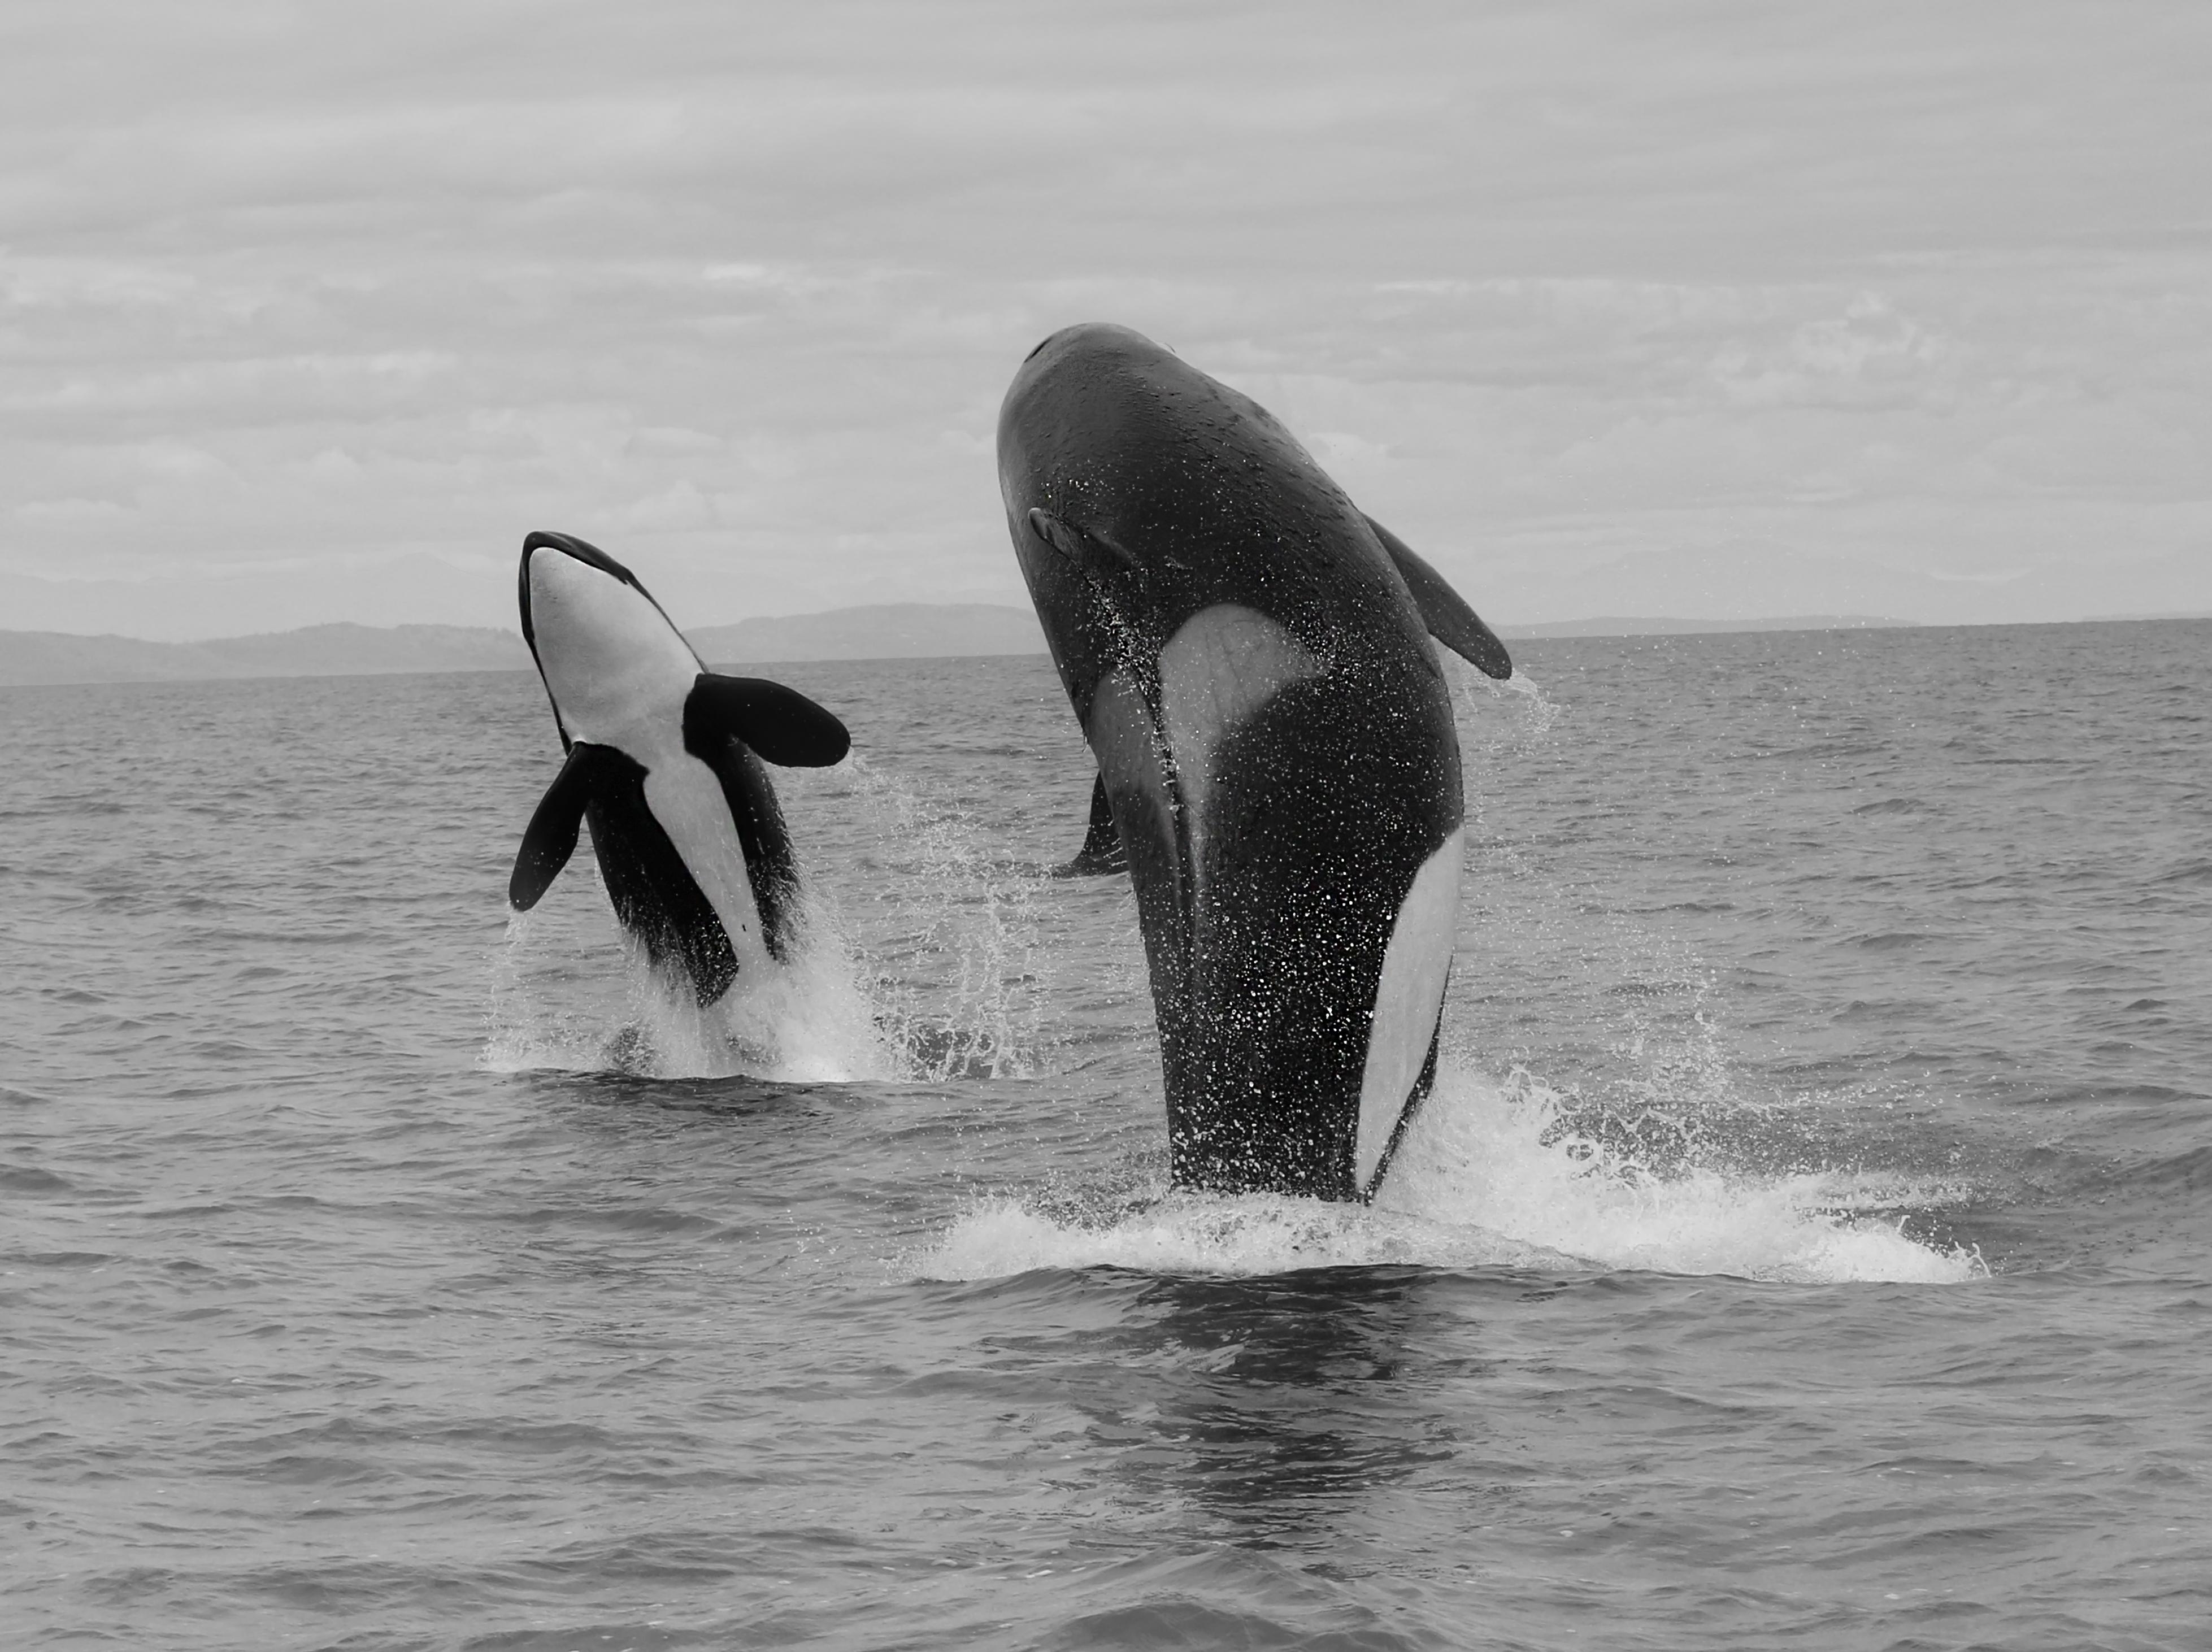 Black and White Photograph Shane Russeck - "La double brèche d'Orca  28x40- Photographie de l'orque en noir et blanc Orca